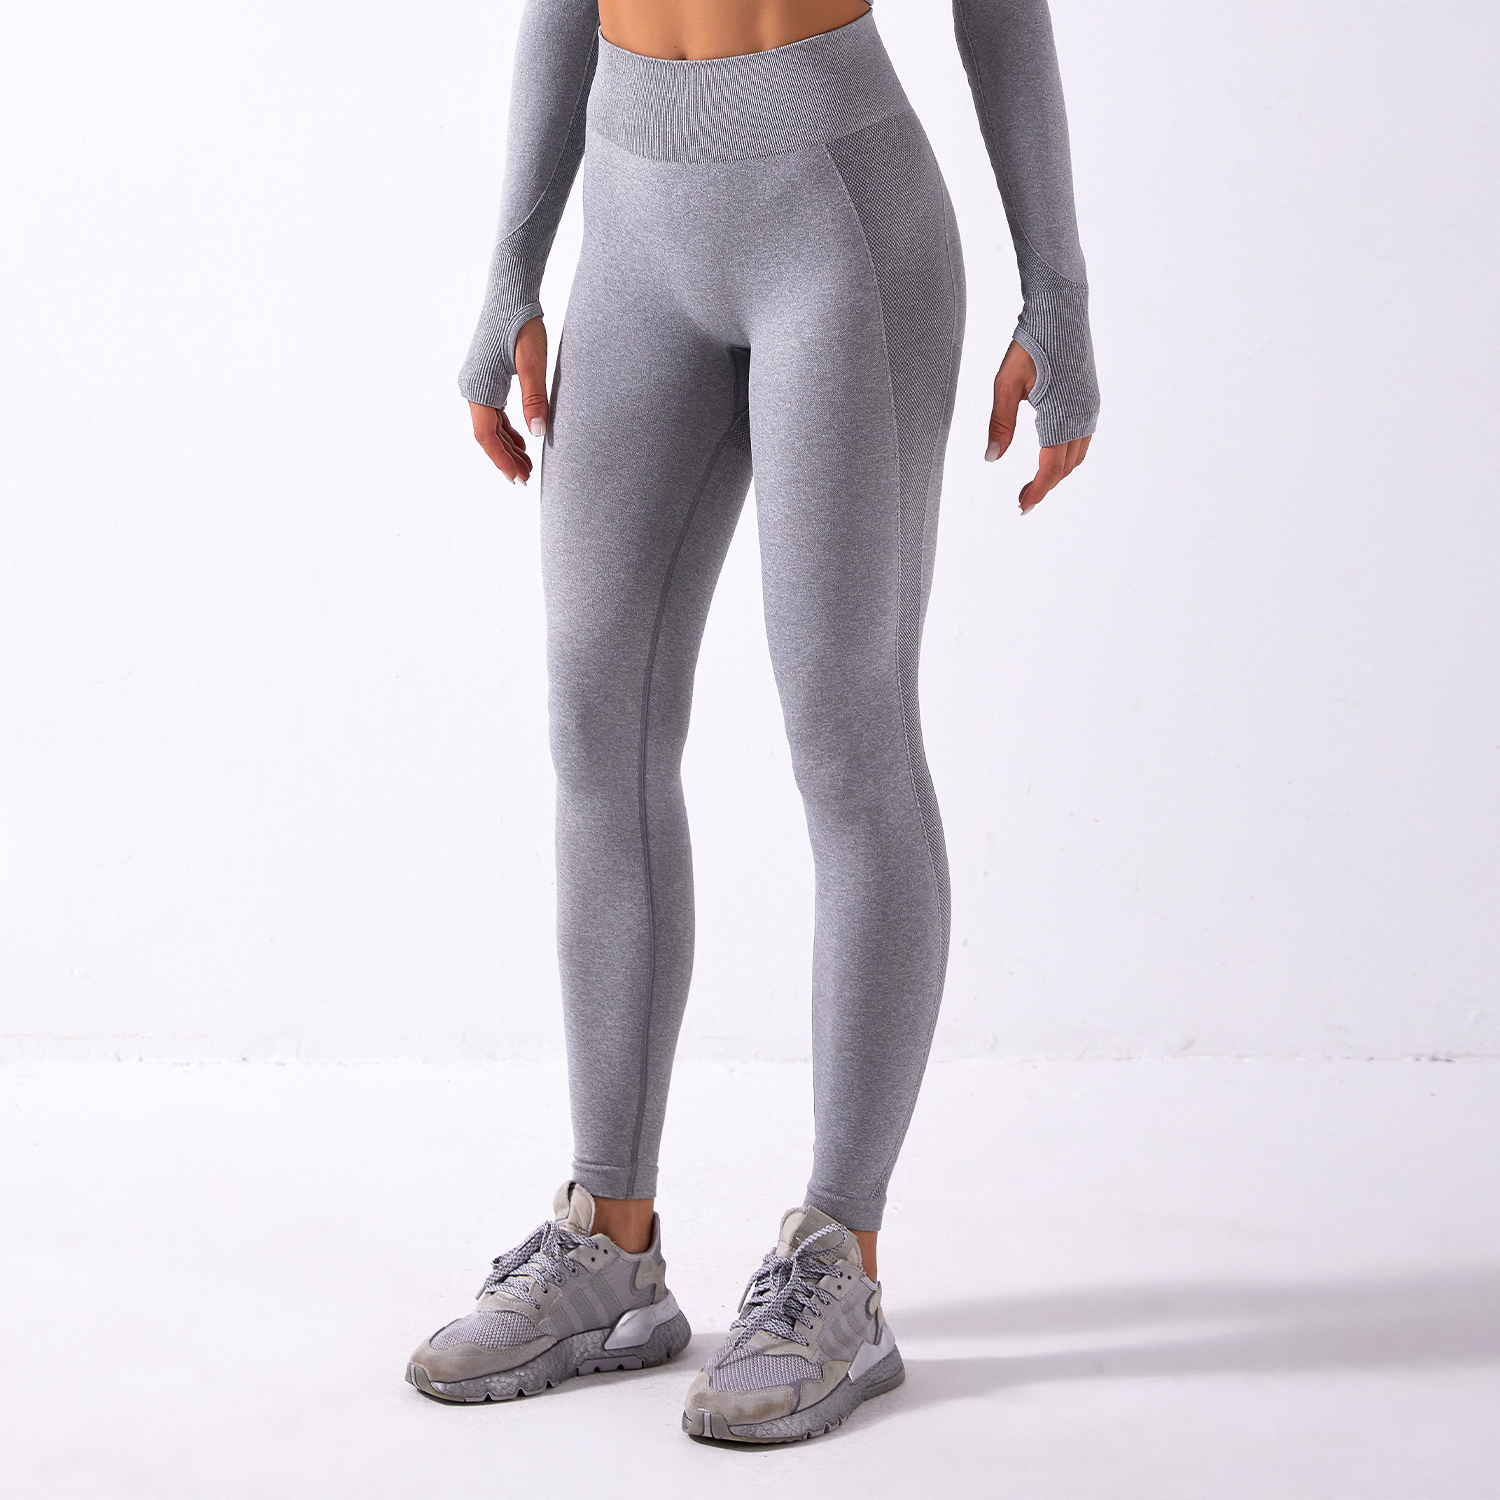 https://wholesale100.com/wp-content/uploads/2020/12/cheap-fitness-leggings.jpg